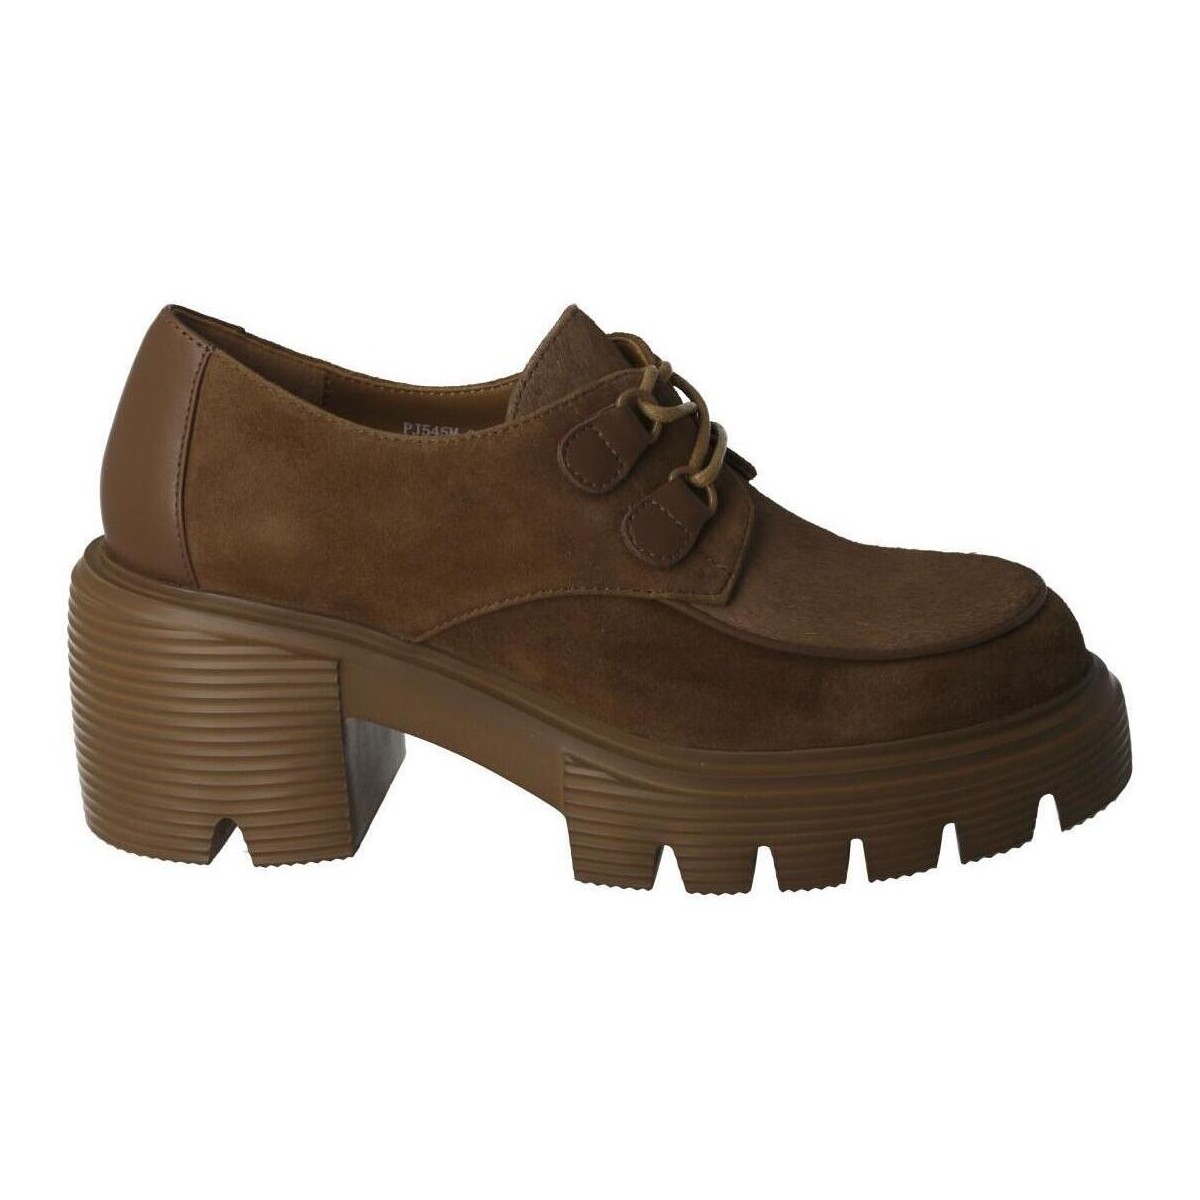 Παπούτσια Πόλης Jeannot -